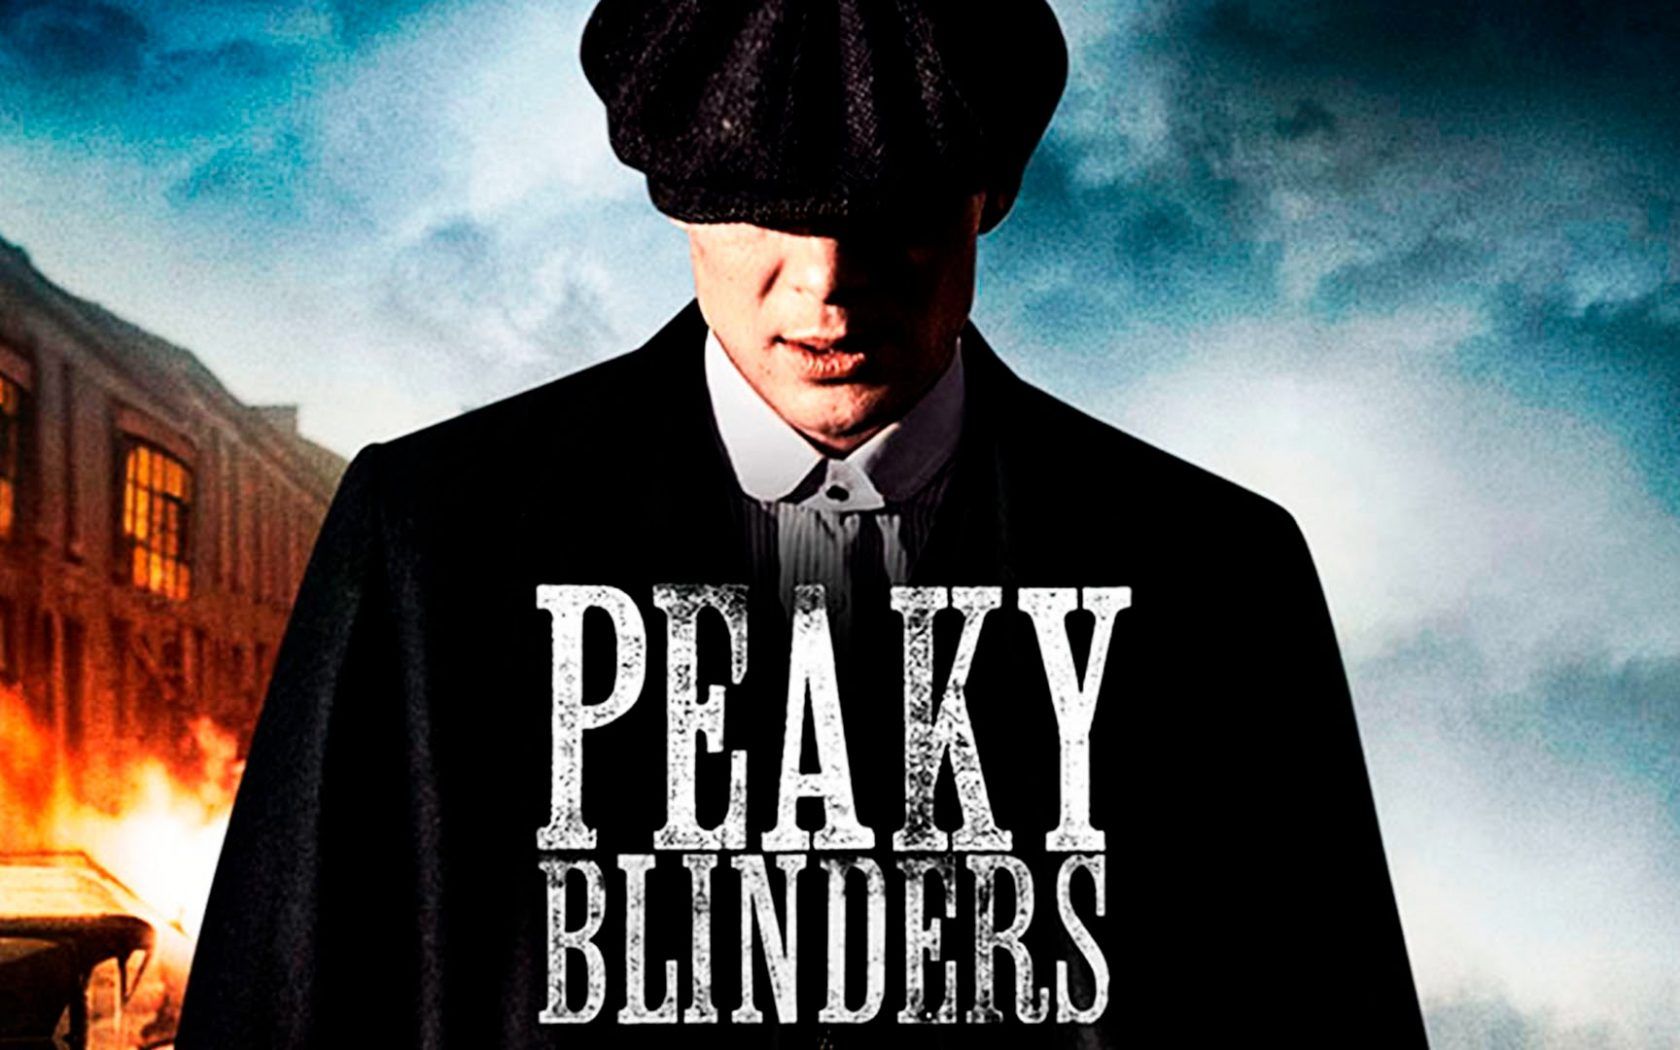 Peaky Blinders TV Show Wallpaper Free Peaky Blinders TV Show Background